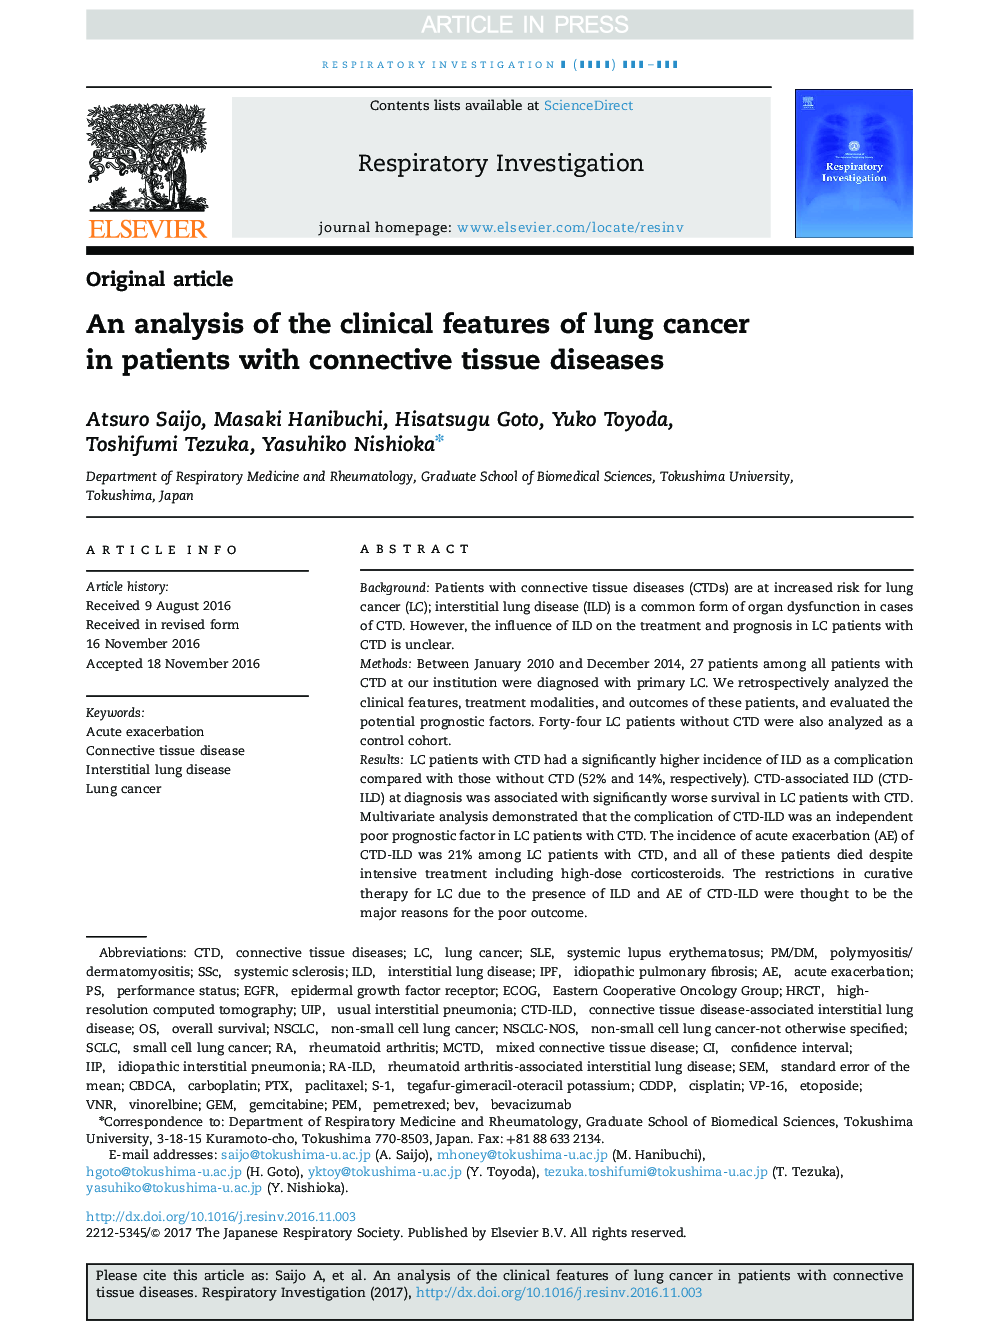 تجزیه و تحلیل ویژگی های بالینی سرطان ریه در بیماران مبتلا به بیماری های بافت همبند 